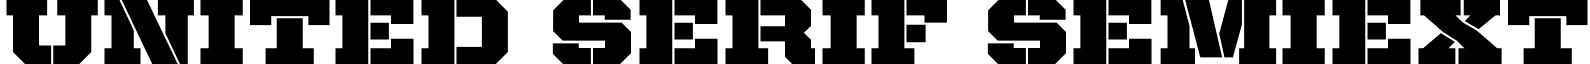 United Serif SemiExt font - UnitedSerifSemiExt-Stencil.otf